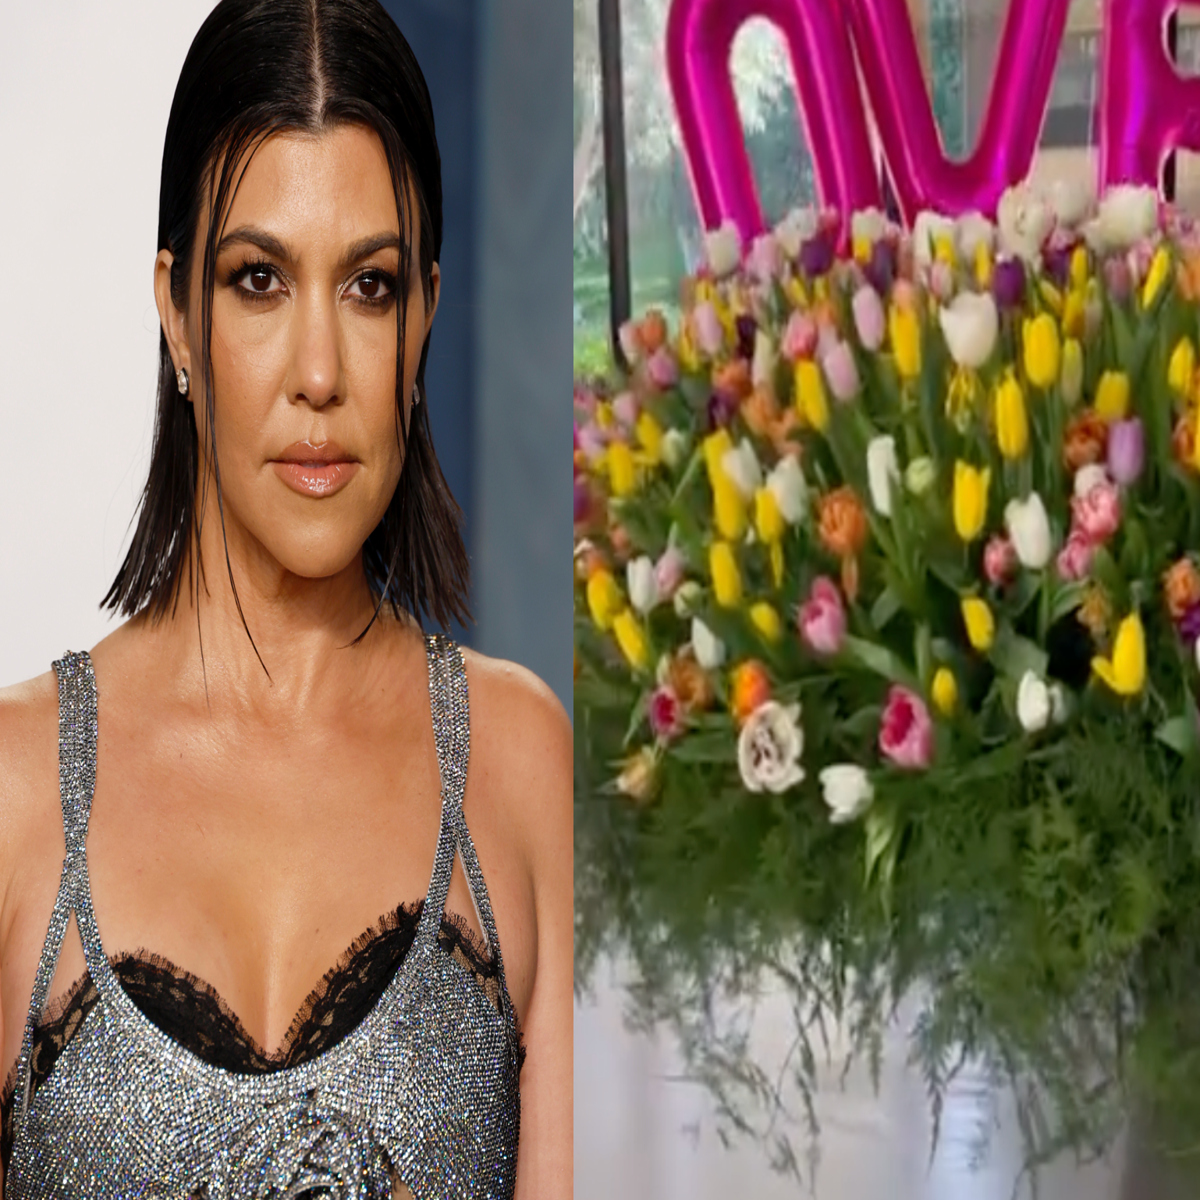 Kourtney Kardashian Responds to Criticism Over Her Birthday Flowers